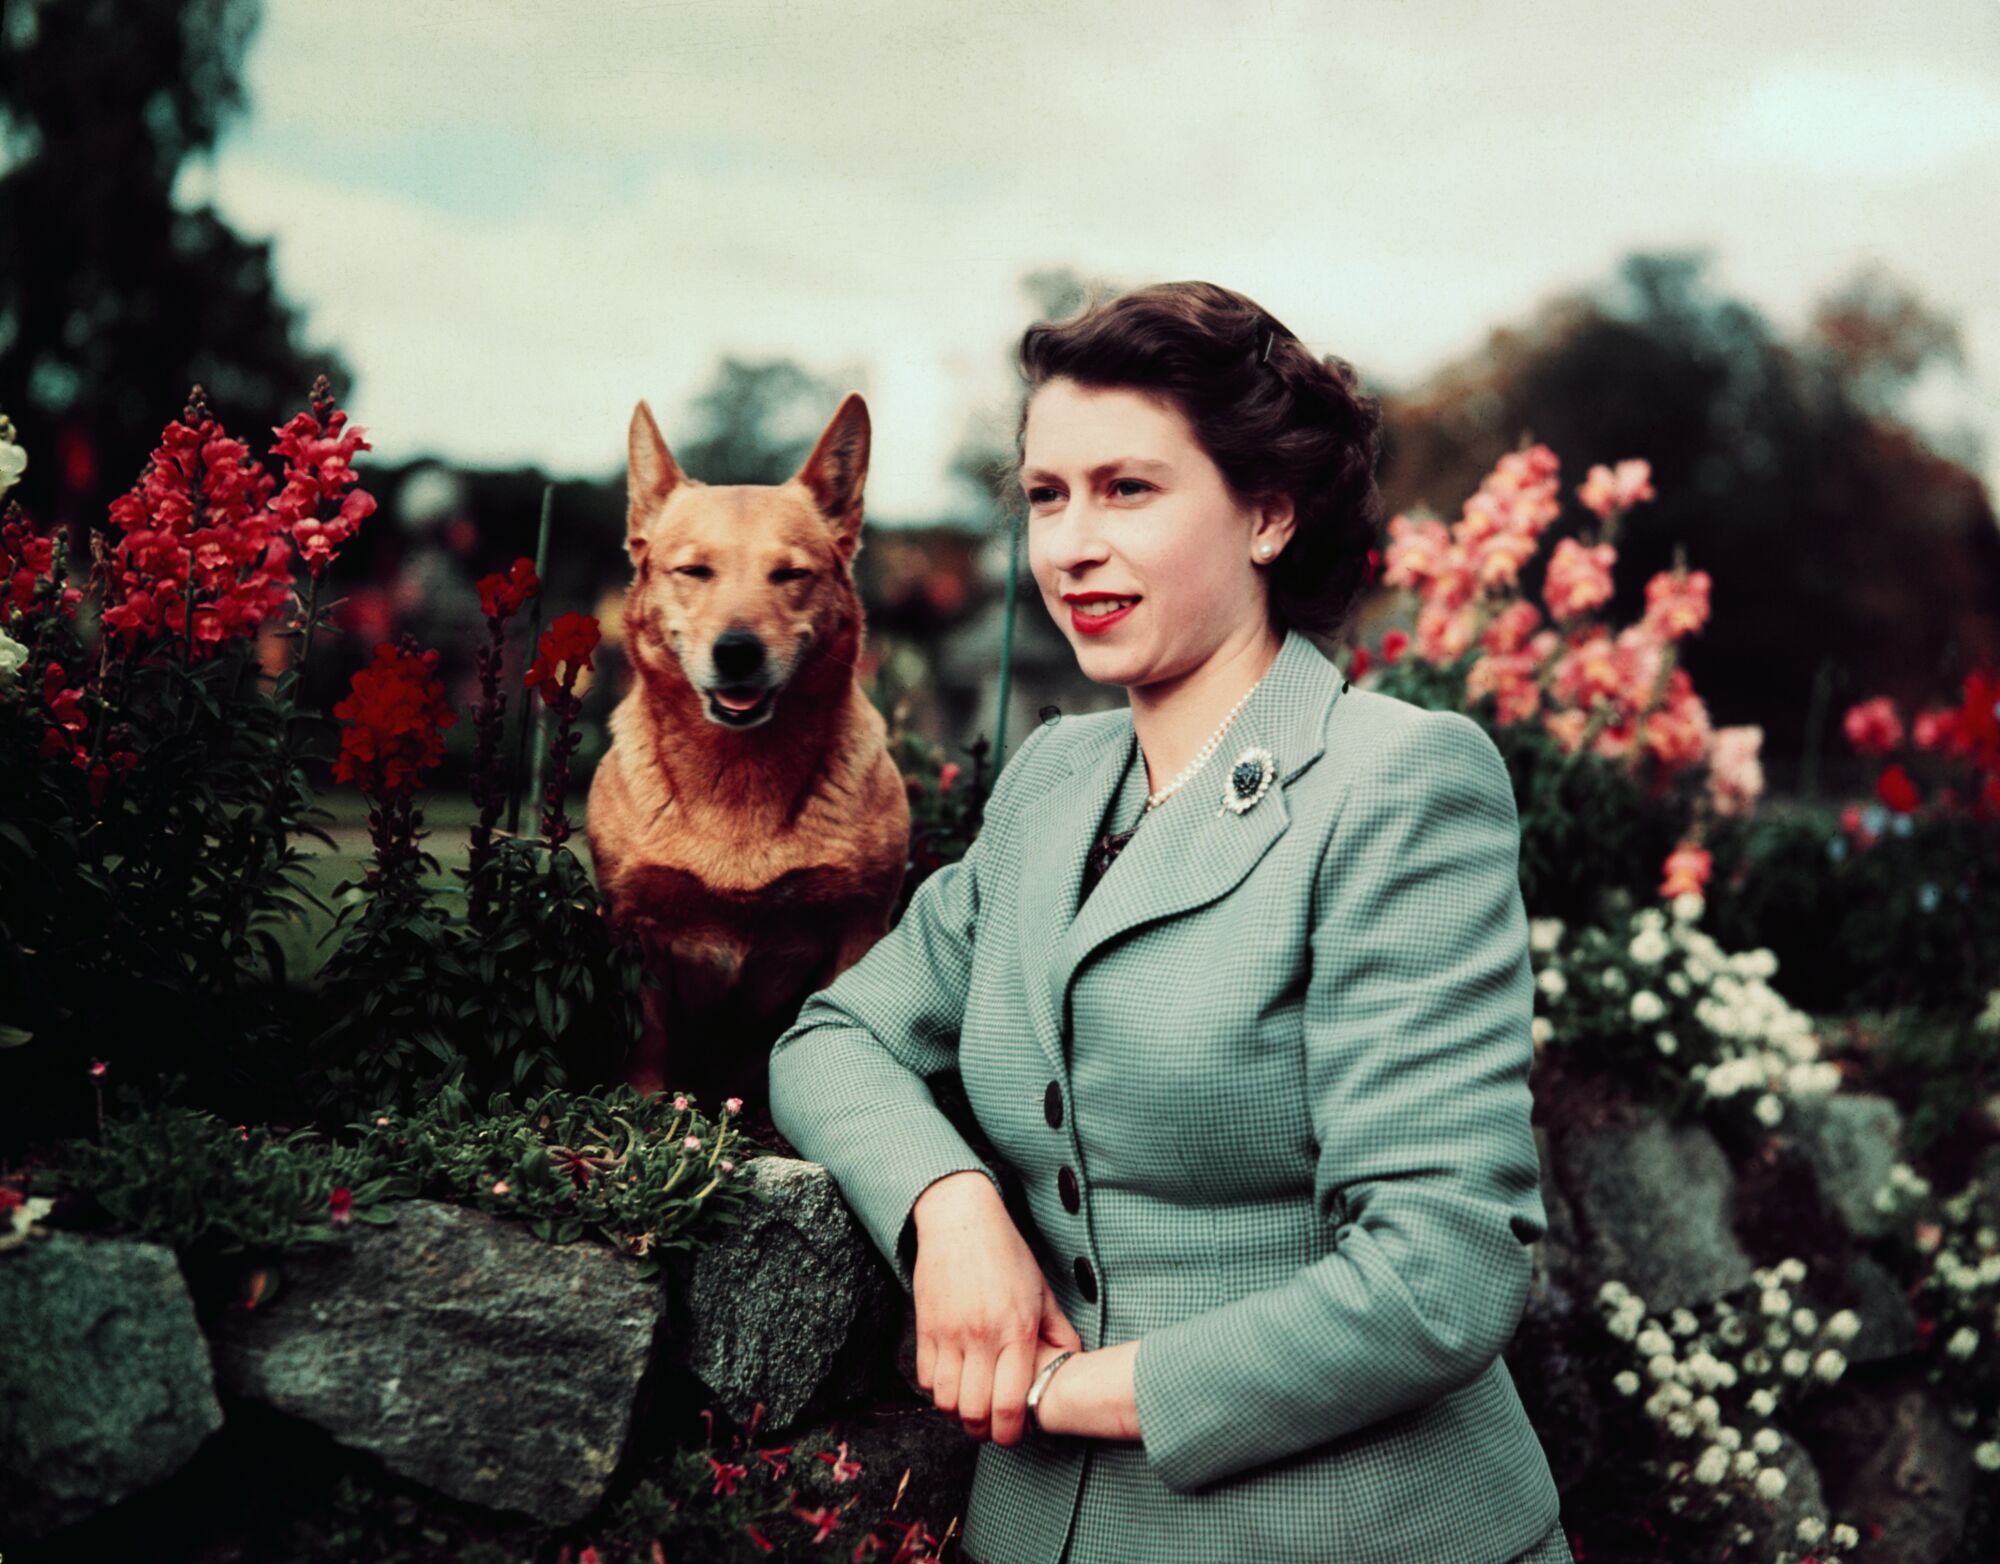 Kraliçe II. Elizabeth, Eylül 1952'de sevgili corgis'lerinden biriyle çiçeklerin yanında poz veriyor.